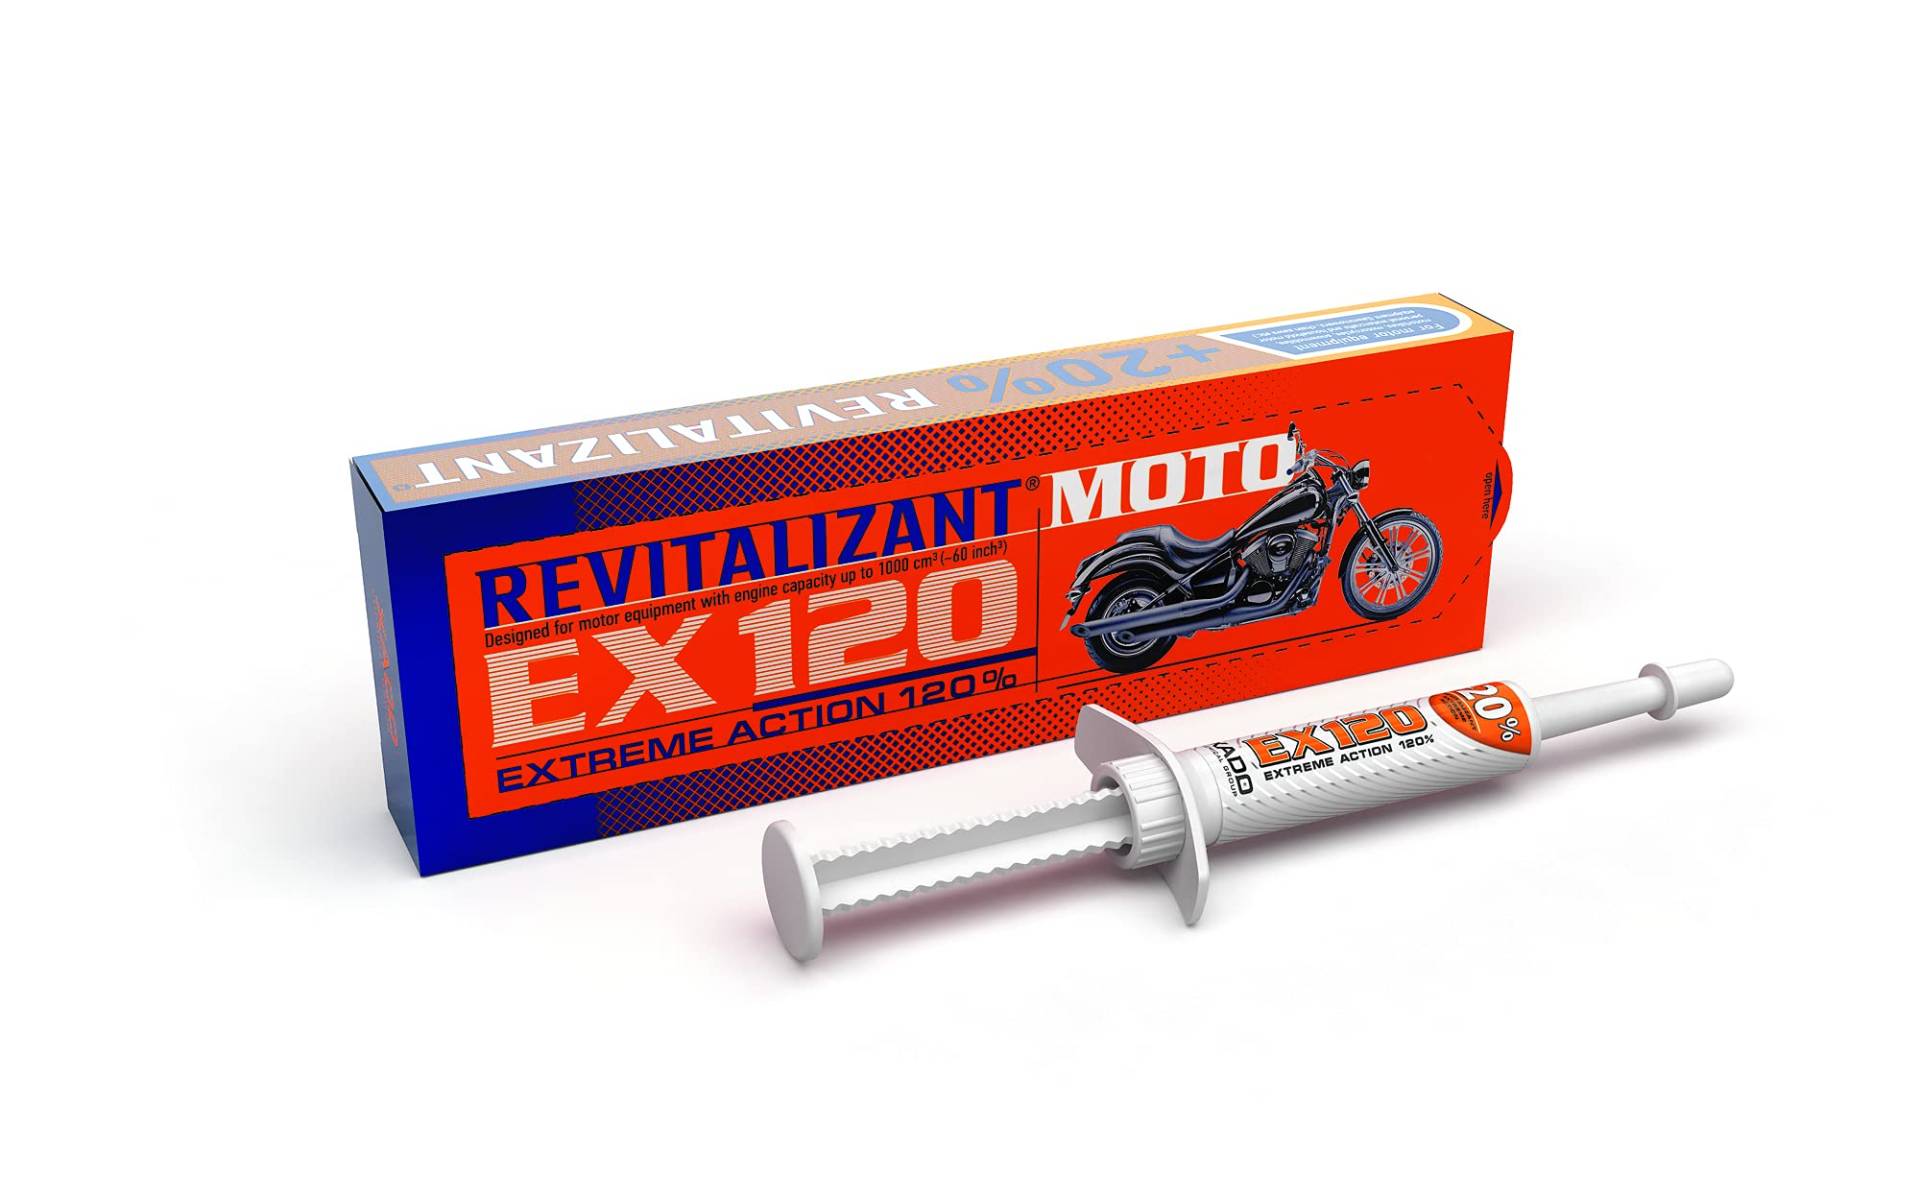 XADO Motor-Öl-Additiv Moto EX120 zur Reparatur und Verschleiss-Schutz für Motorräder Mopeds und alle Motoren bis 1000 cm3 - mit Revitalizant Motoröl Zusatz von XADO